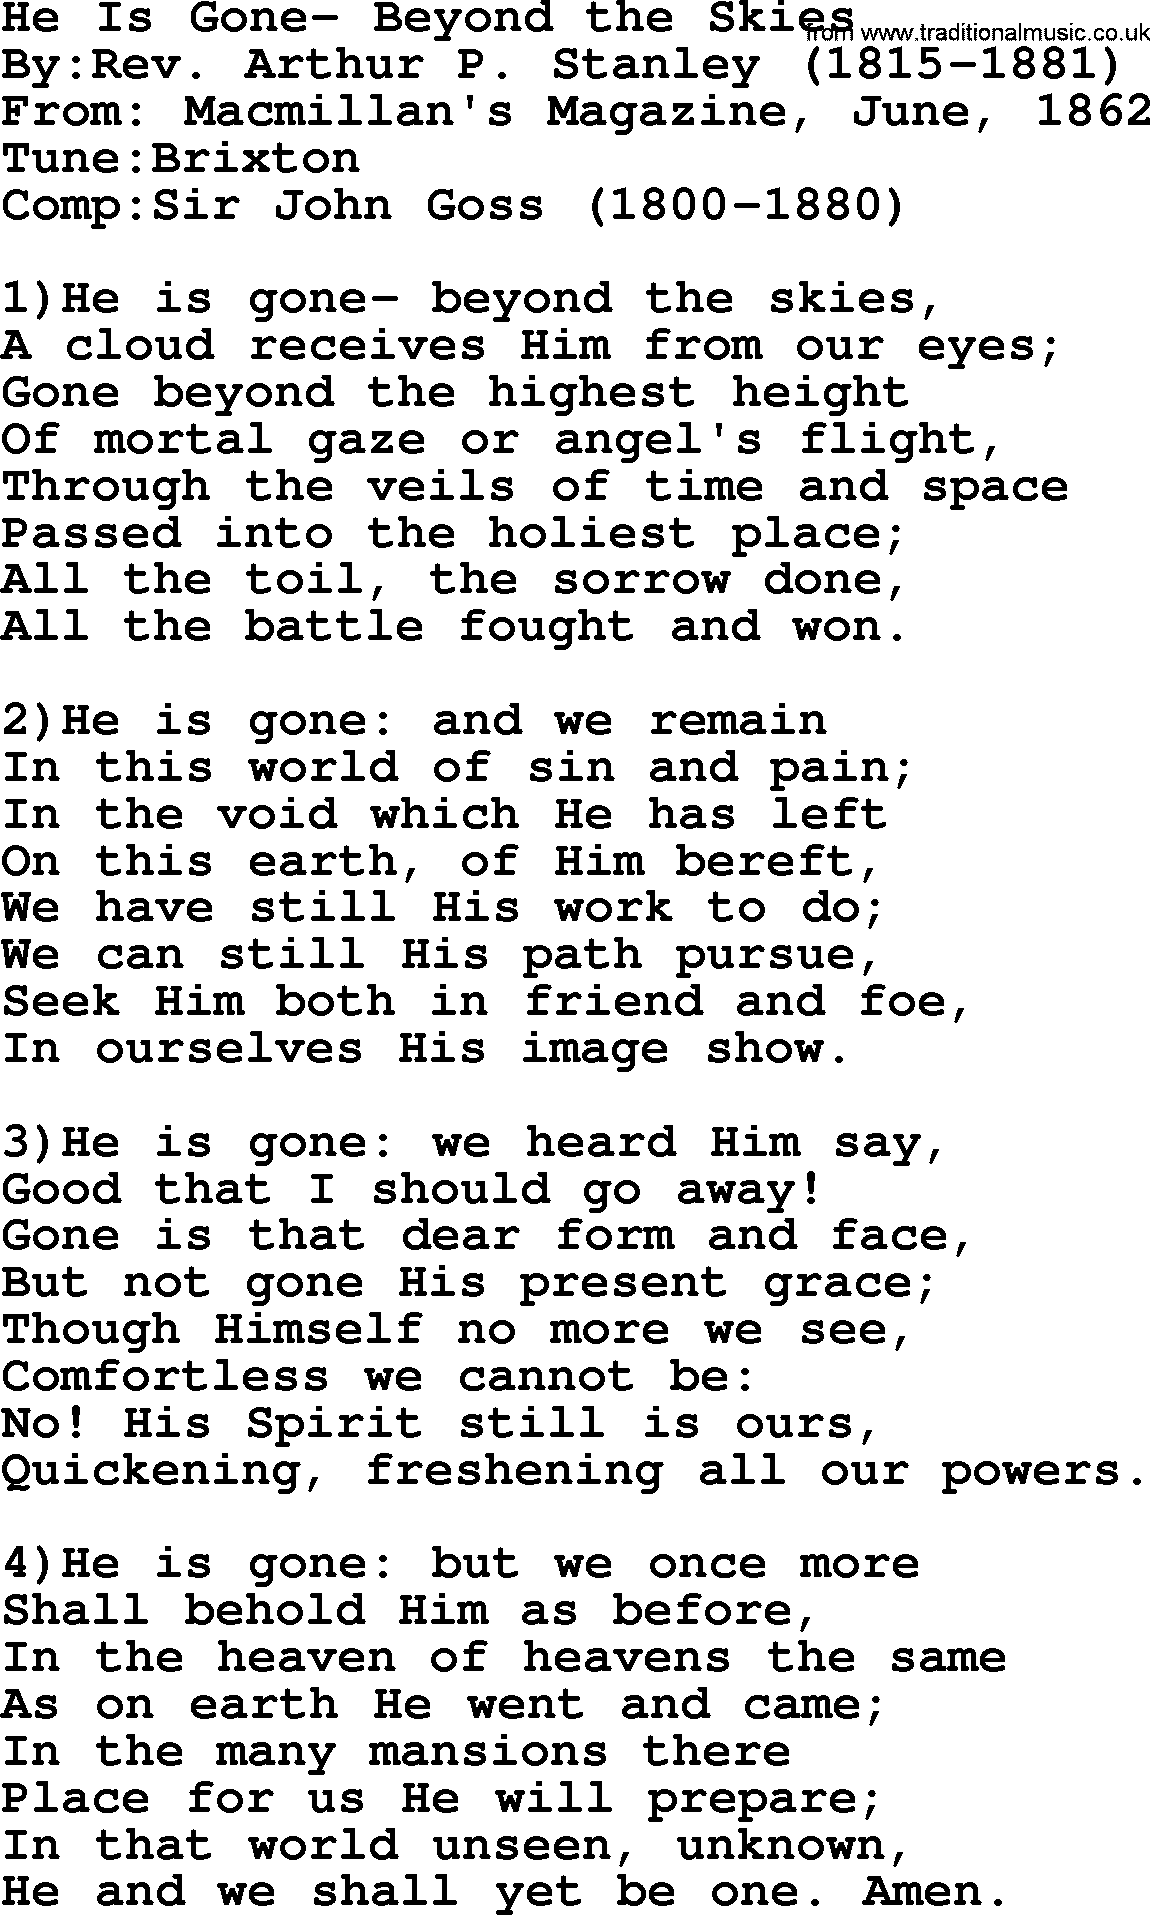 Methodist Hymn: He Is Gone- Beyond The Skies, lyrics